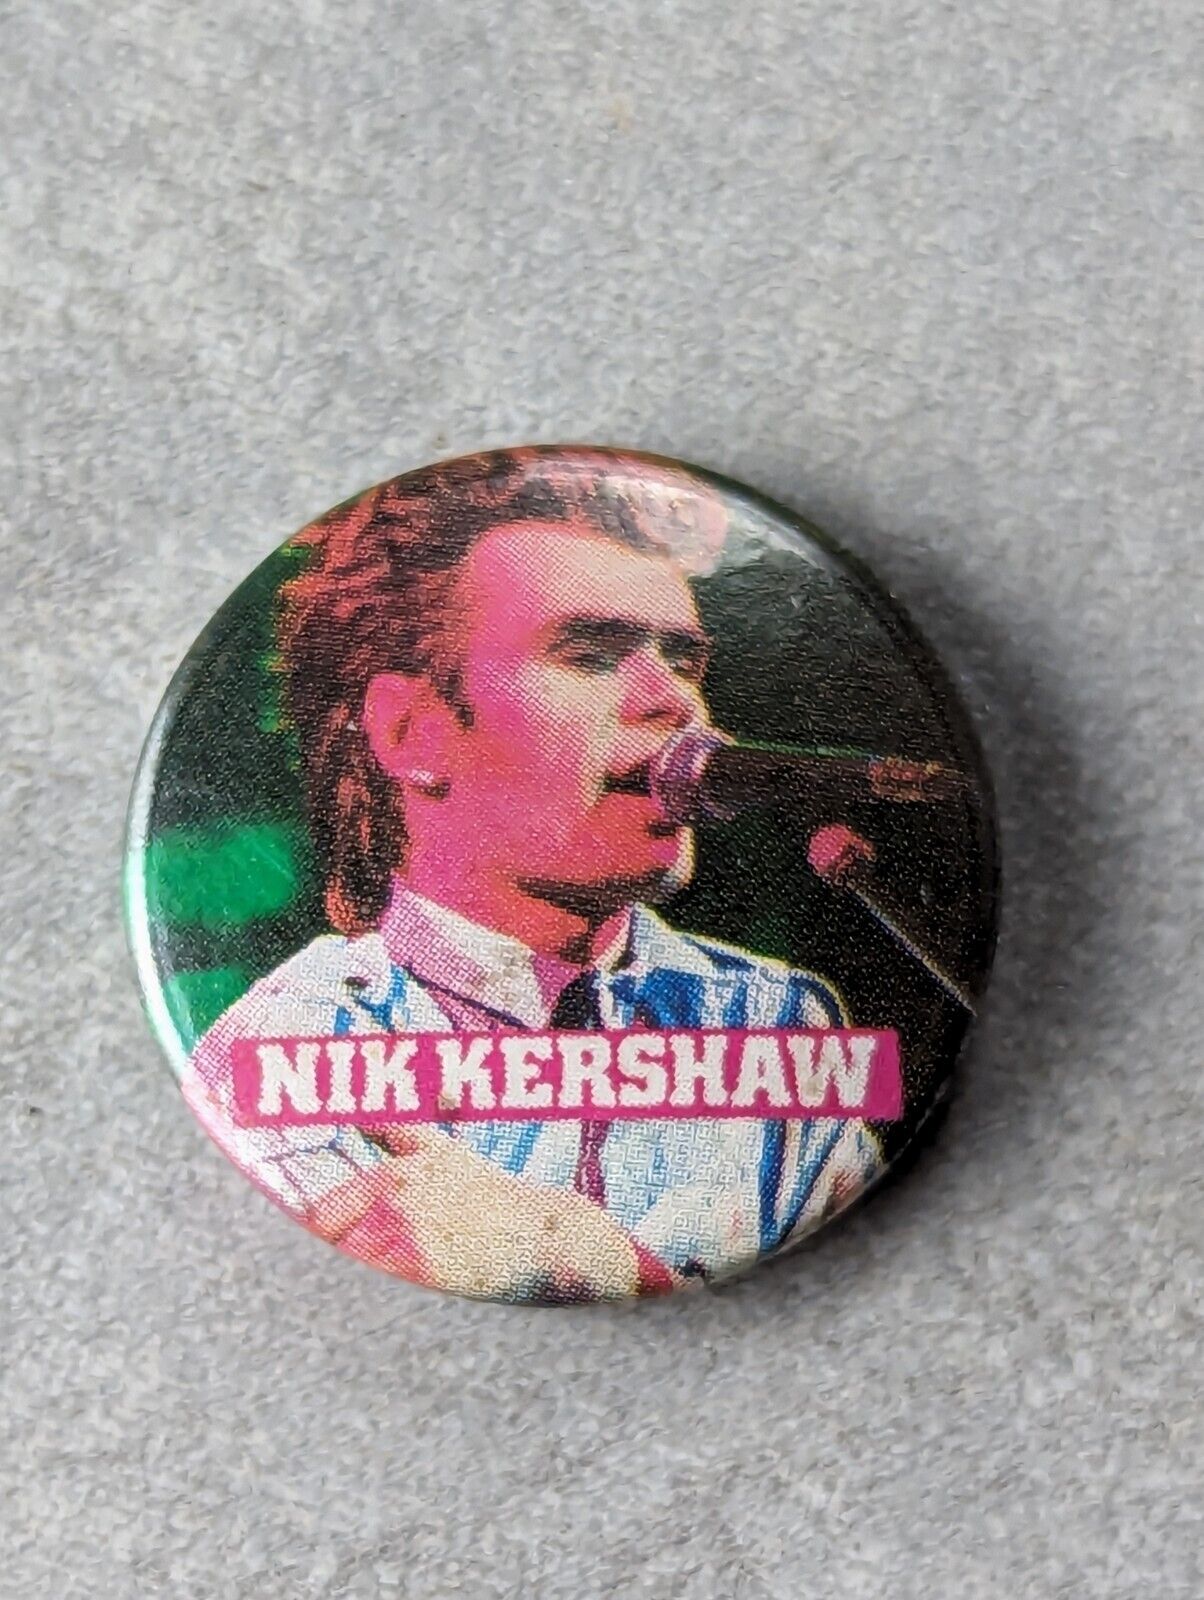 Vintage 80s Nik Kershaw Pin BADGE 